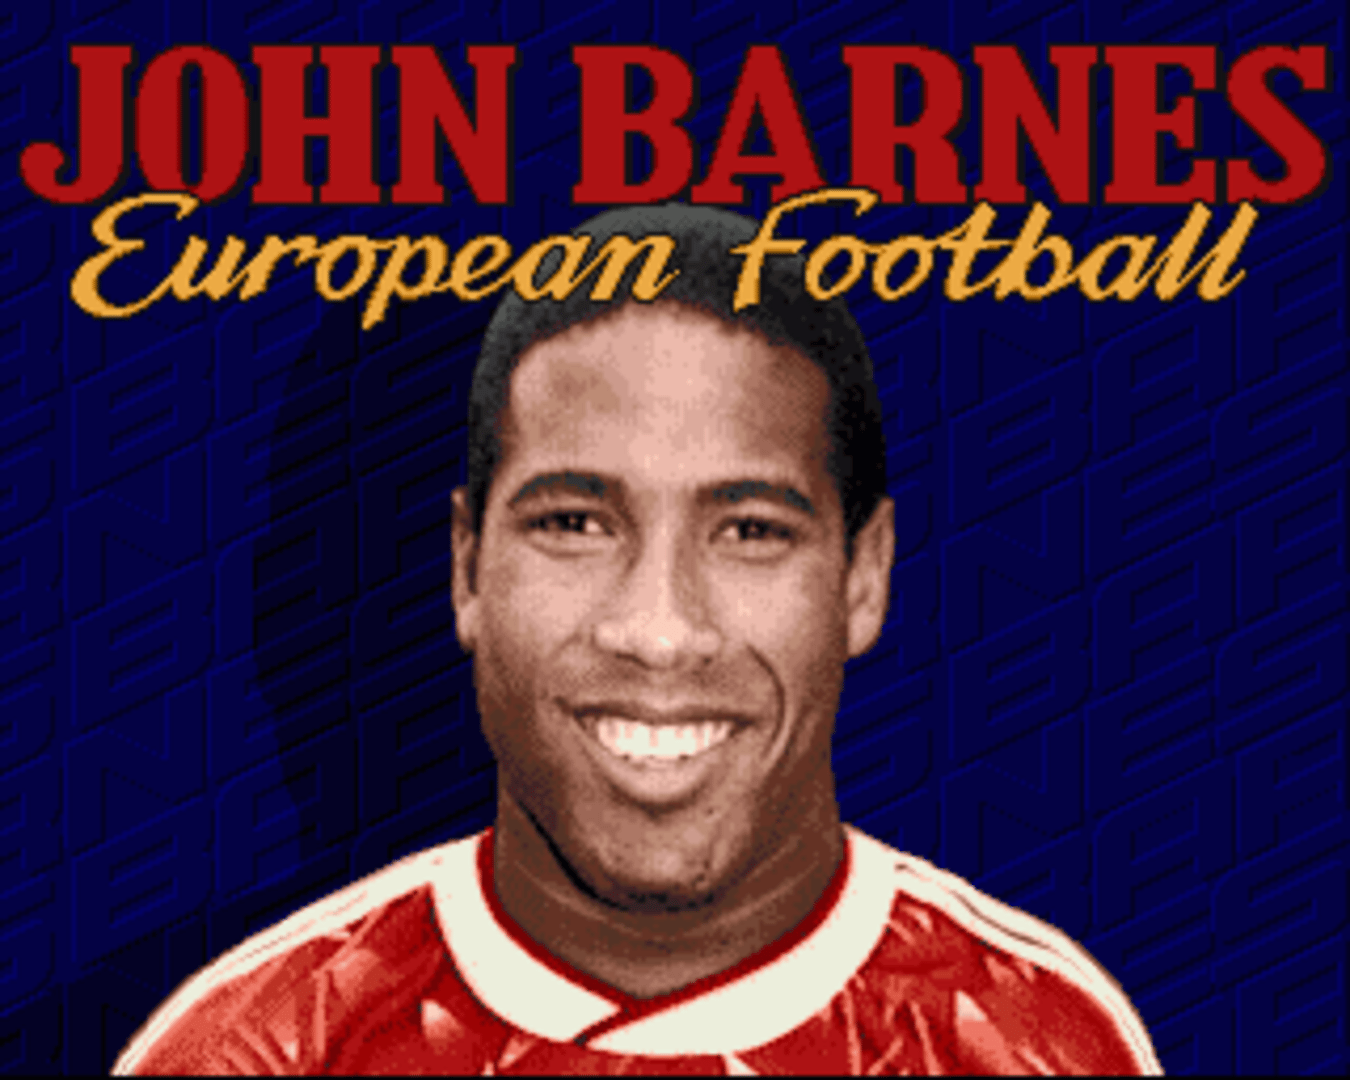 John Barnes European Football screenshot